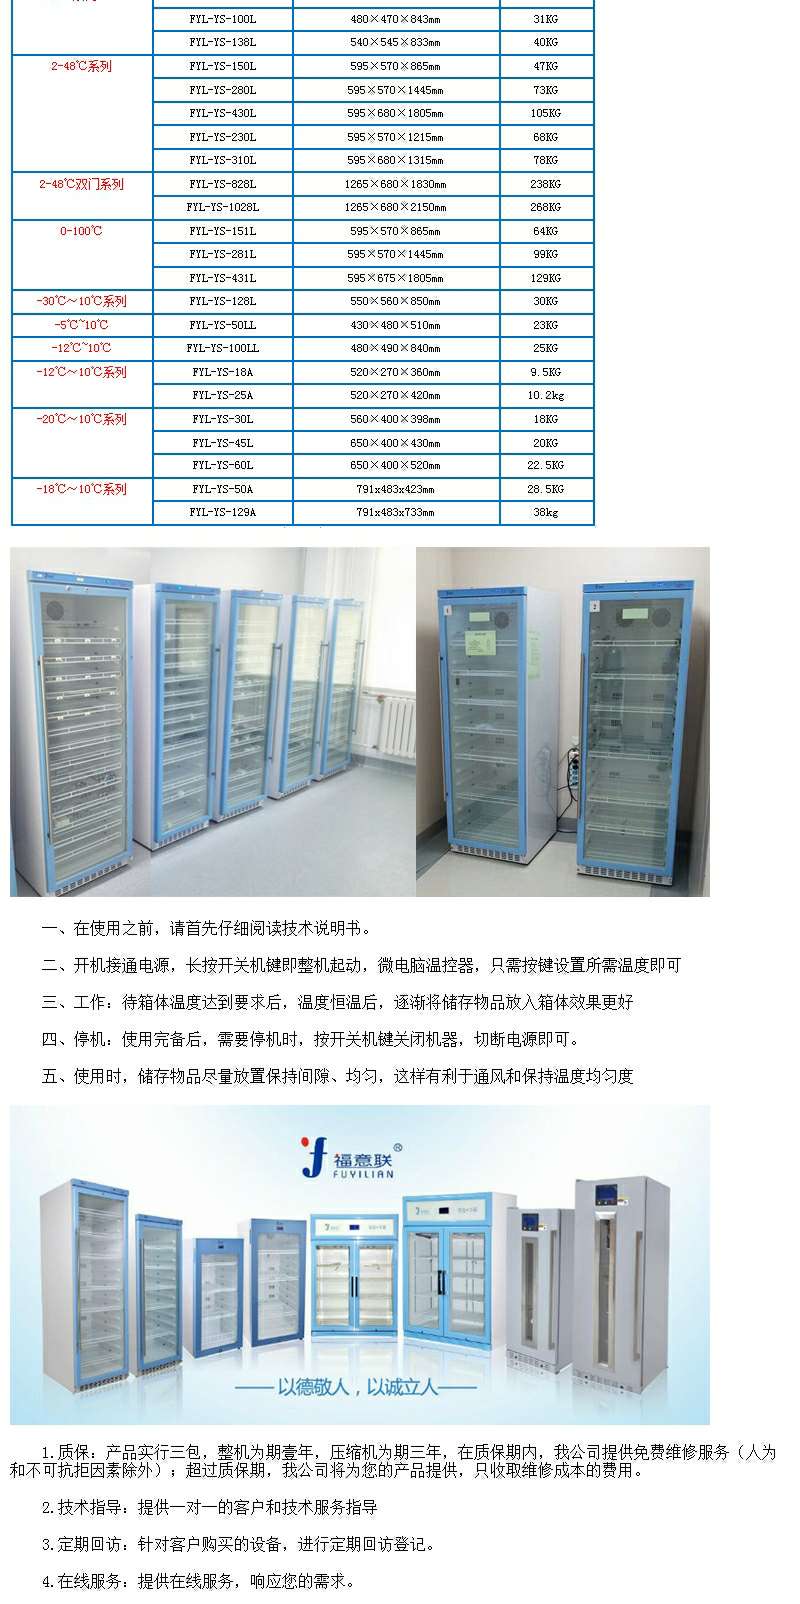 冷藏冷冻箱 2~8℃冷藏箱 低温保存箱